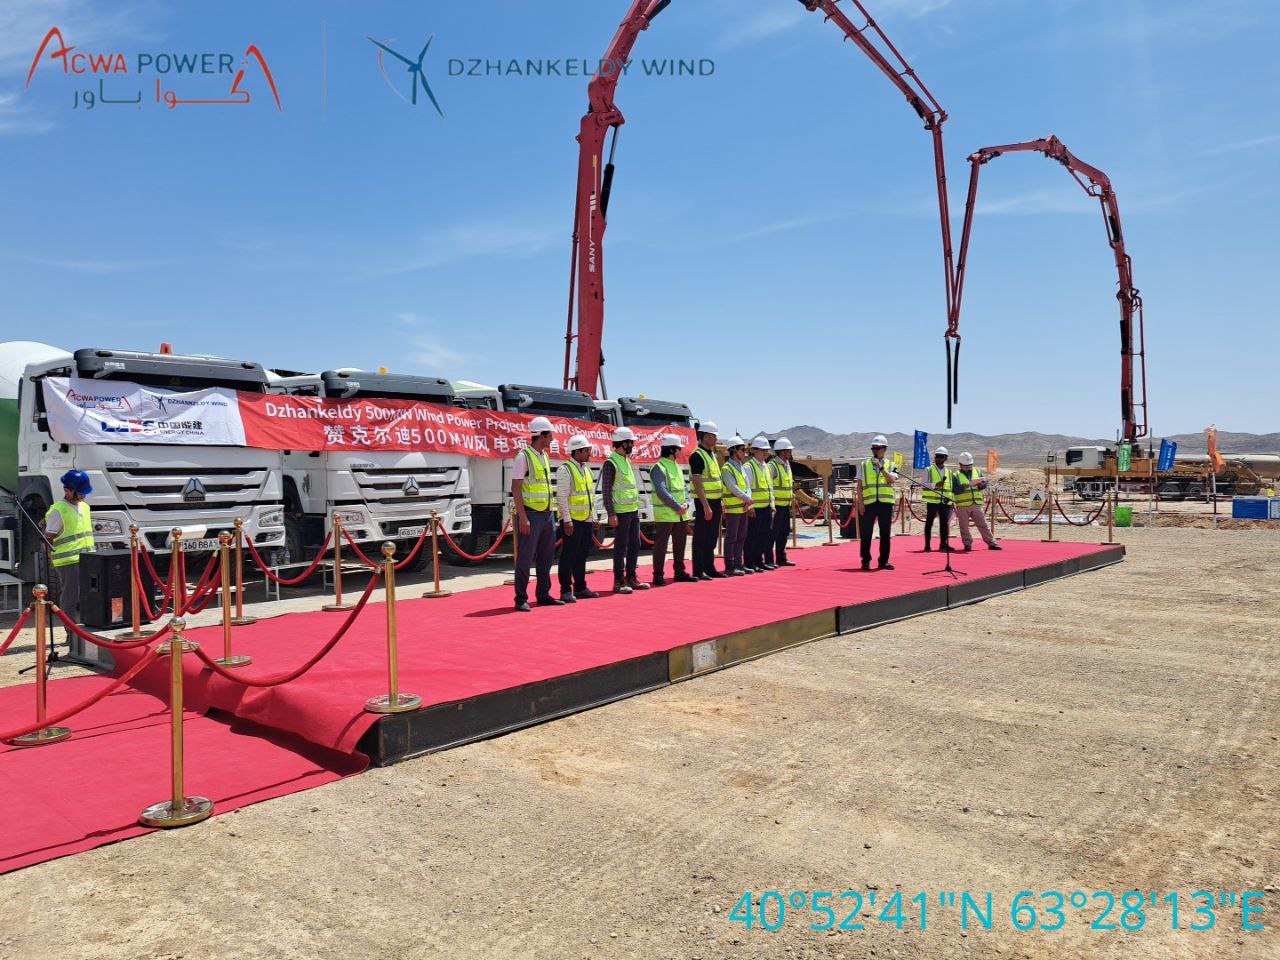 Завершено строительство фундамента для первой турбины ветроэлектростанции мощностью 500 МВт, которая строиться в Пешкунском районе Бухарской области